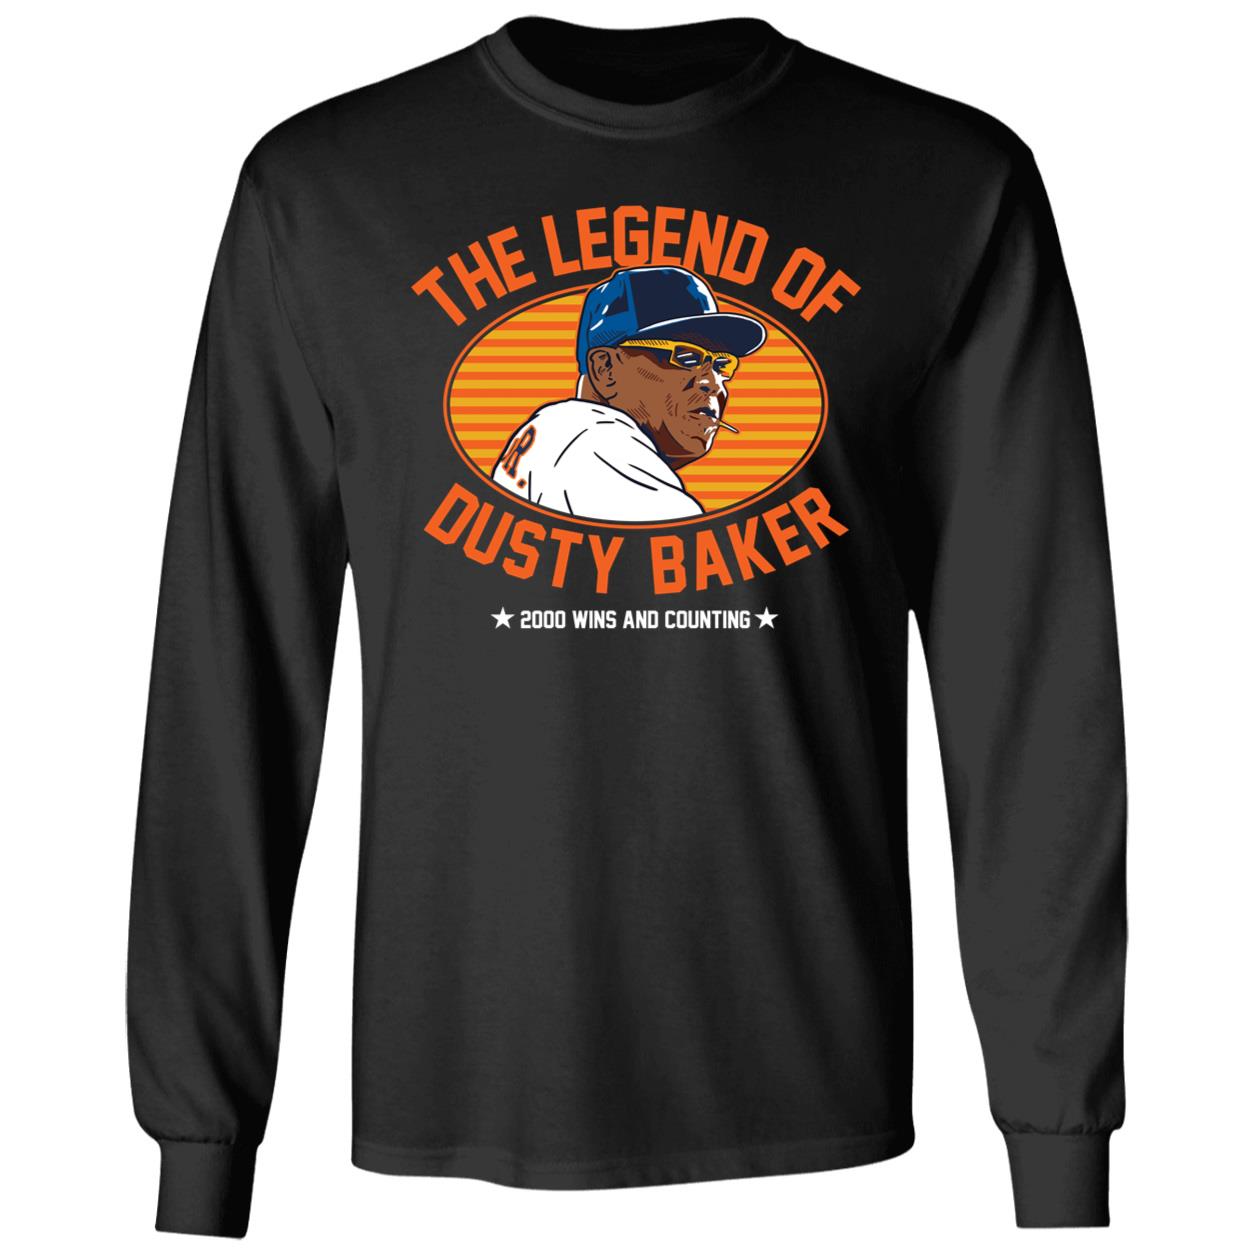 OneRockin The Legend of Dusty Baker Long Sleeve Shirt